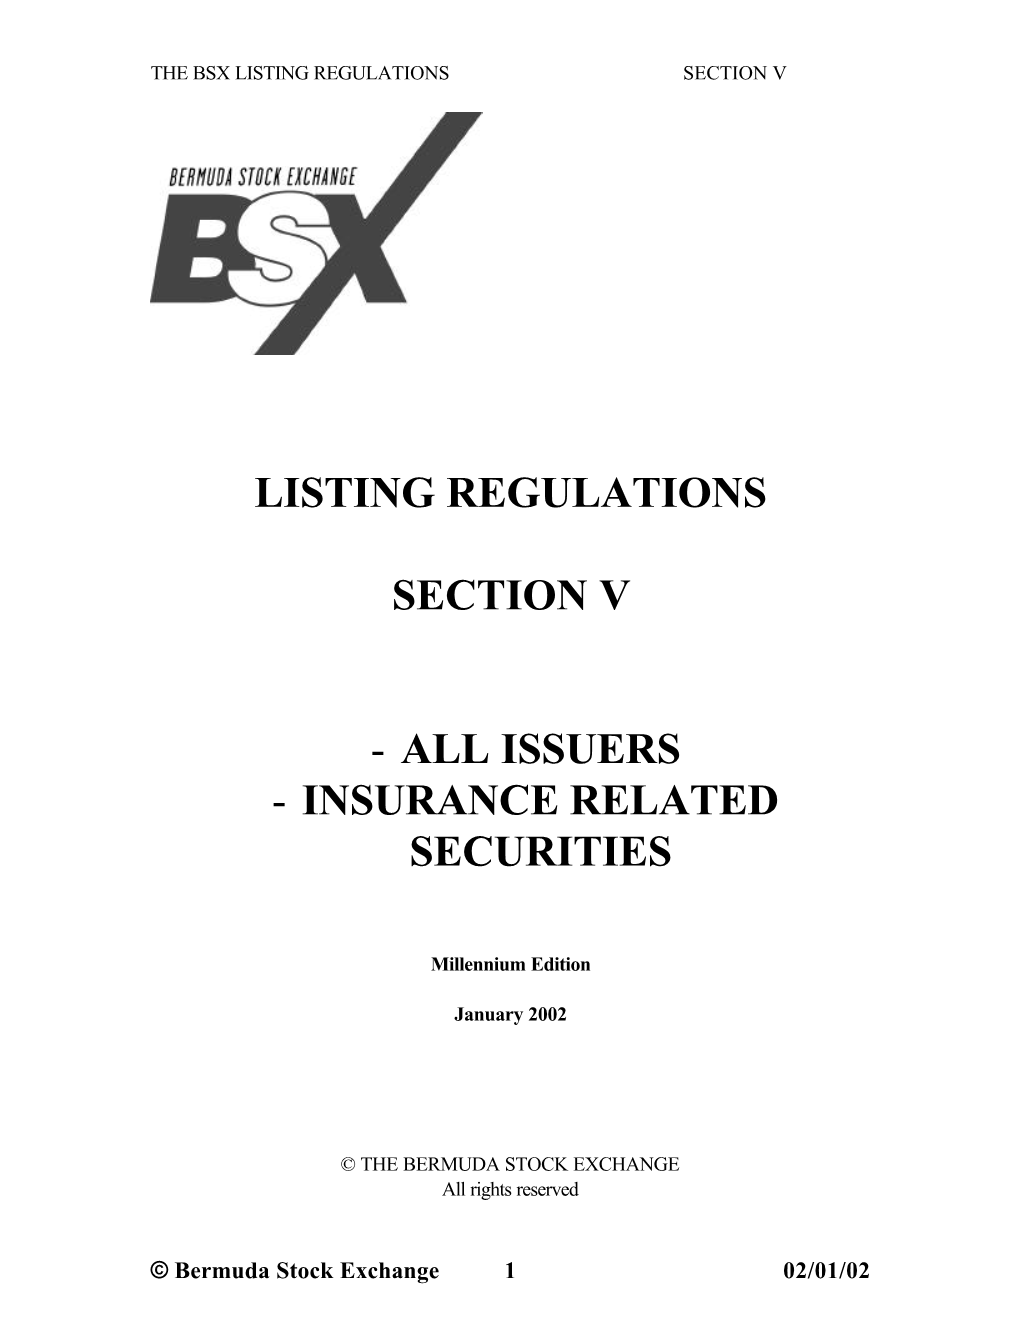 Listing Regulations Section V